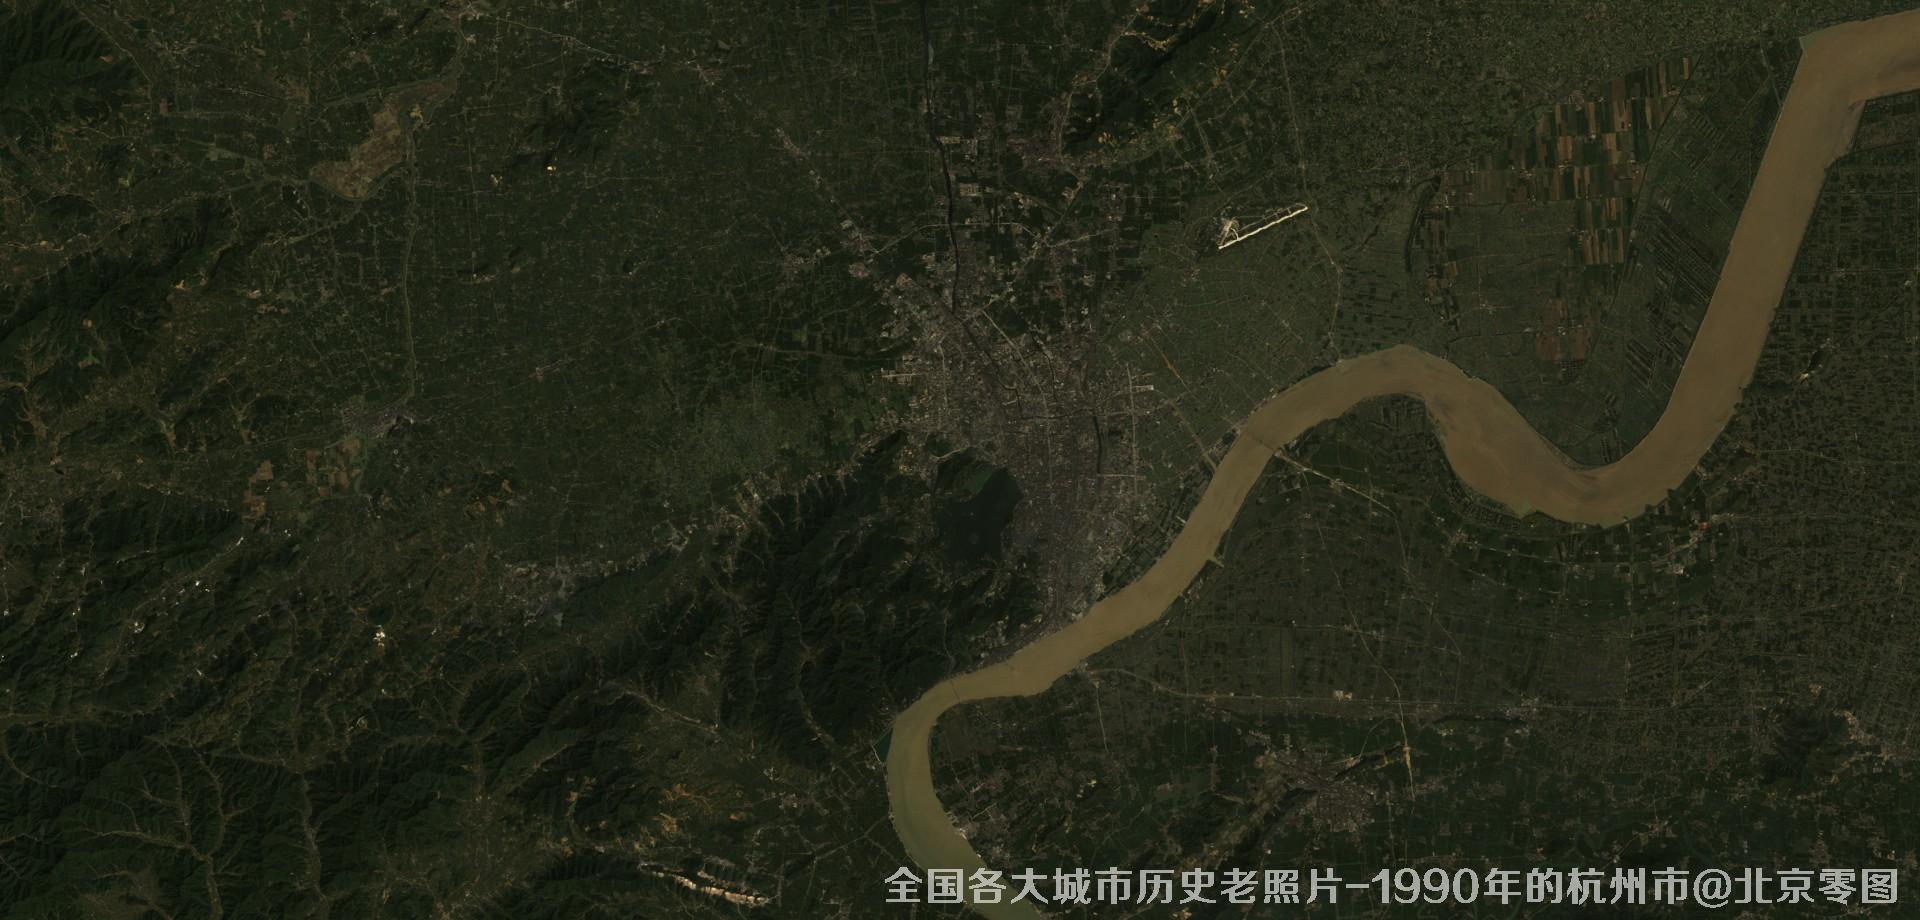 美国Landsat卫星拍摄的1990年的江苏省杭州市历史卫星影像图